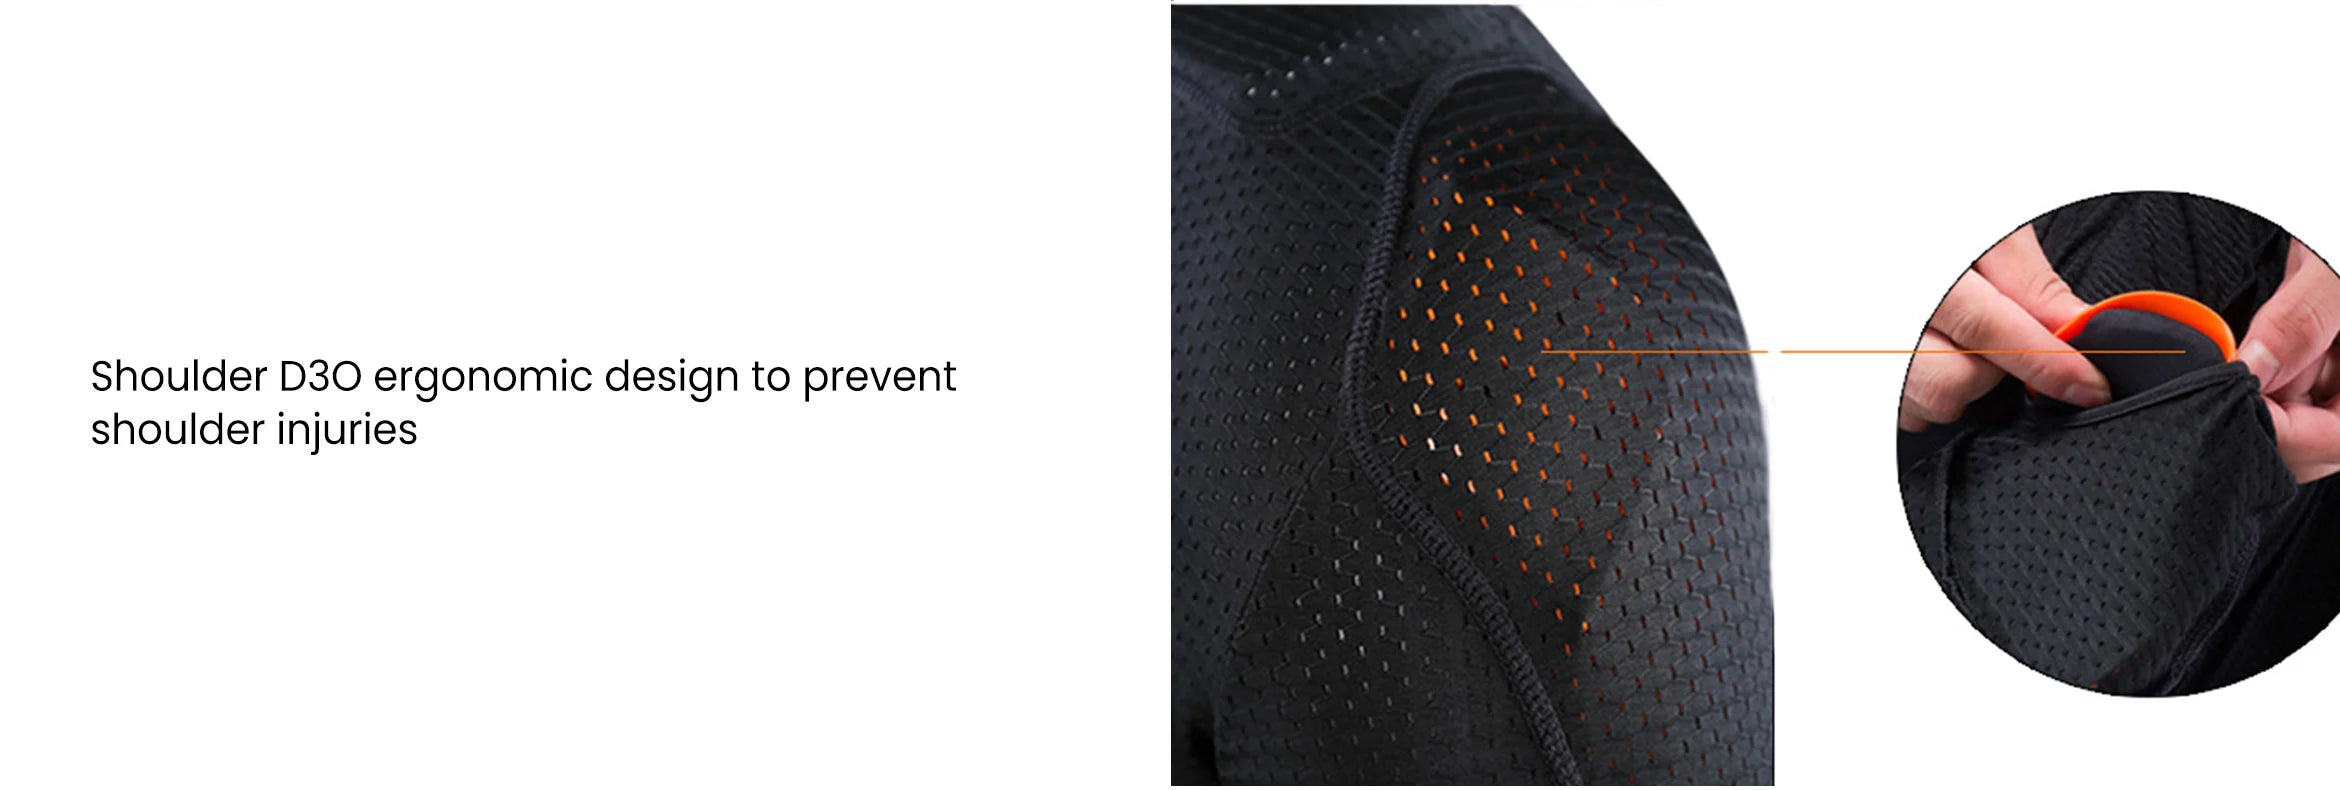 6. Doorek Ski Armor Jacket for Kids - Shoulder D3O ergonomic design to prevent shoulder injuries